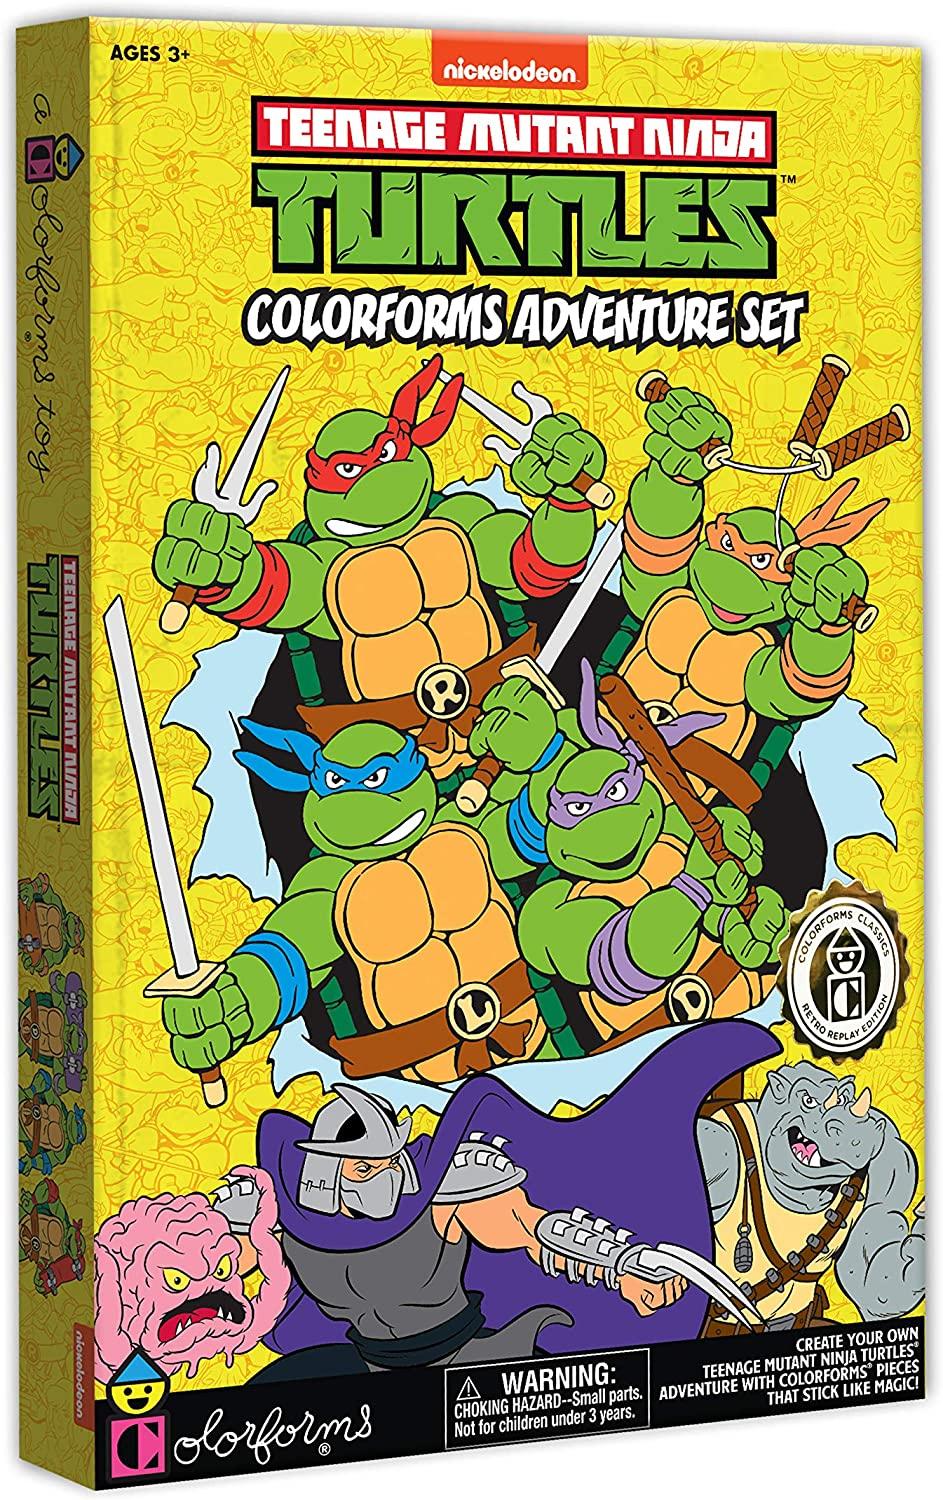 Colorforms Classics Teenage Mutant Ninja Turtles